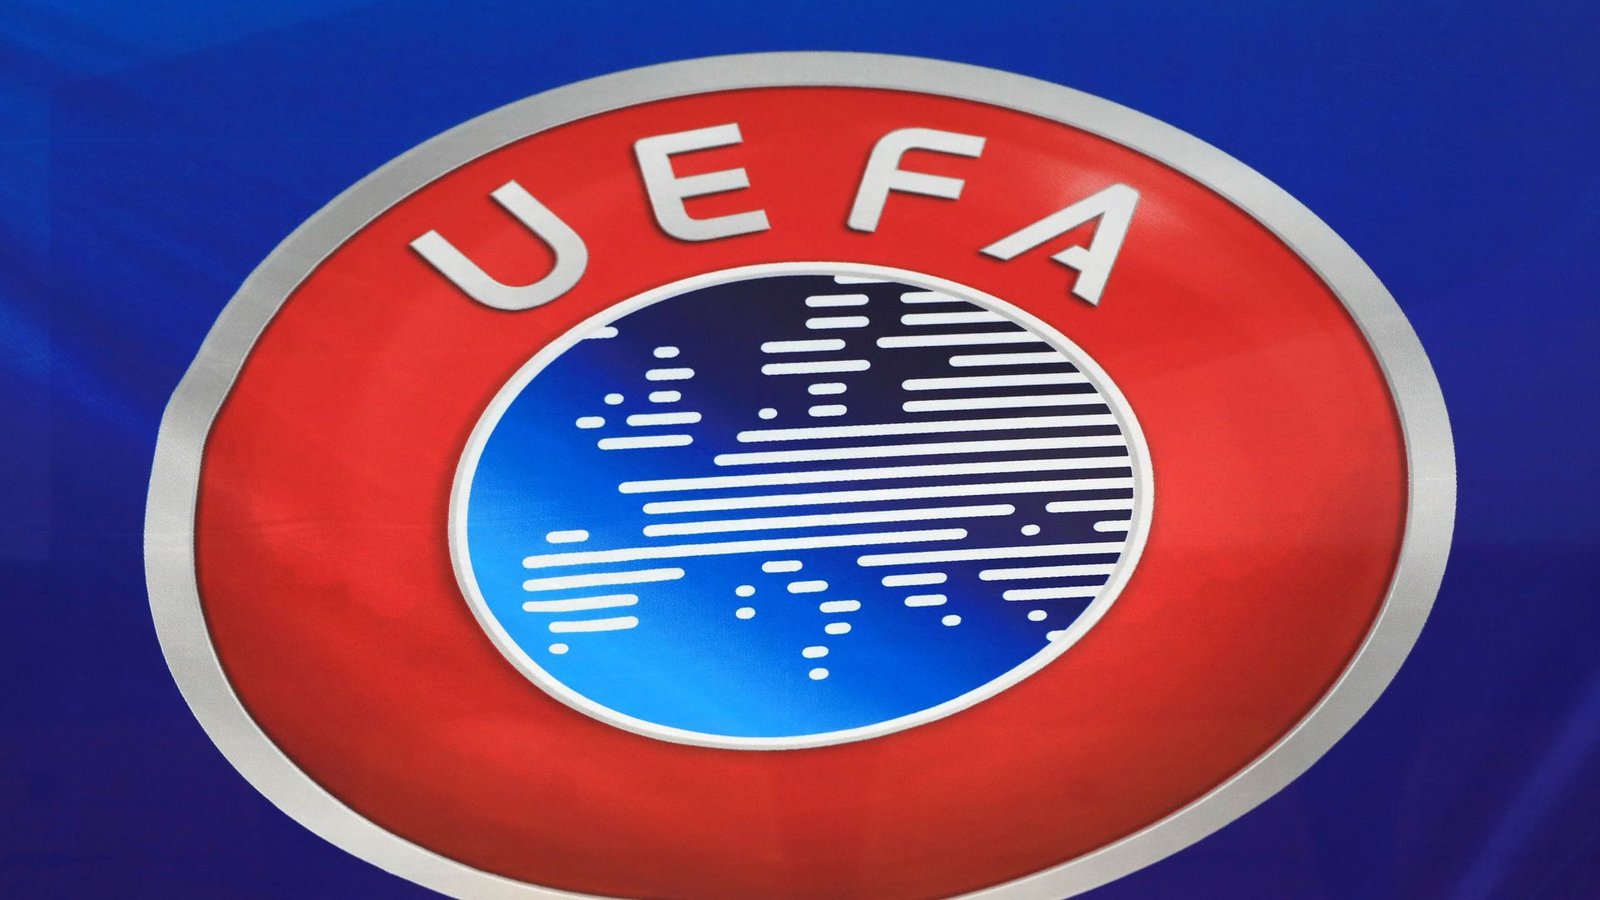 Das Logo des Europäischen Fußball-Verbands UEFA.Foto: Mike Egerton/PA Wire/dpa